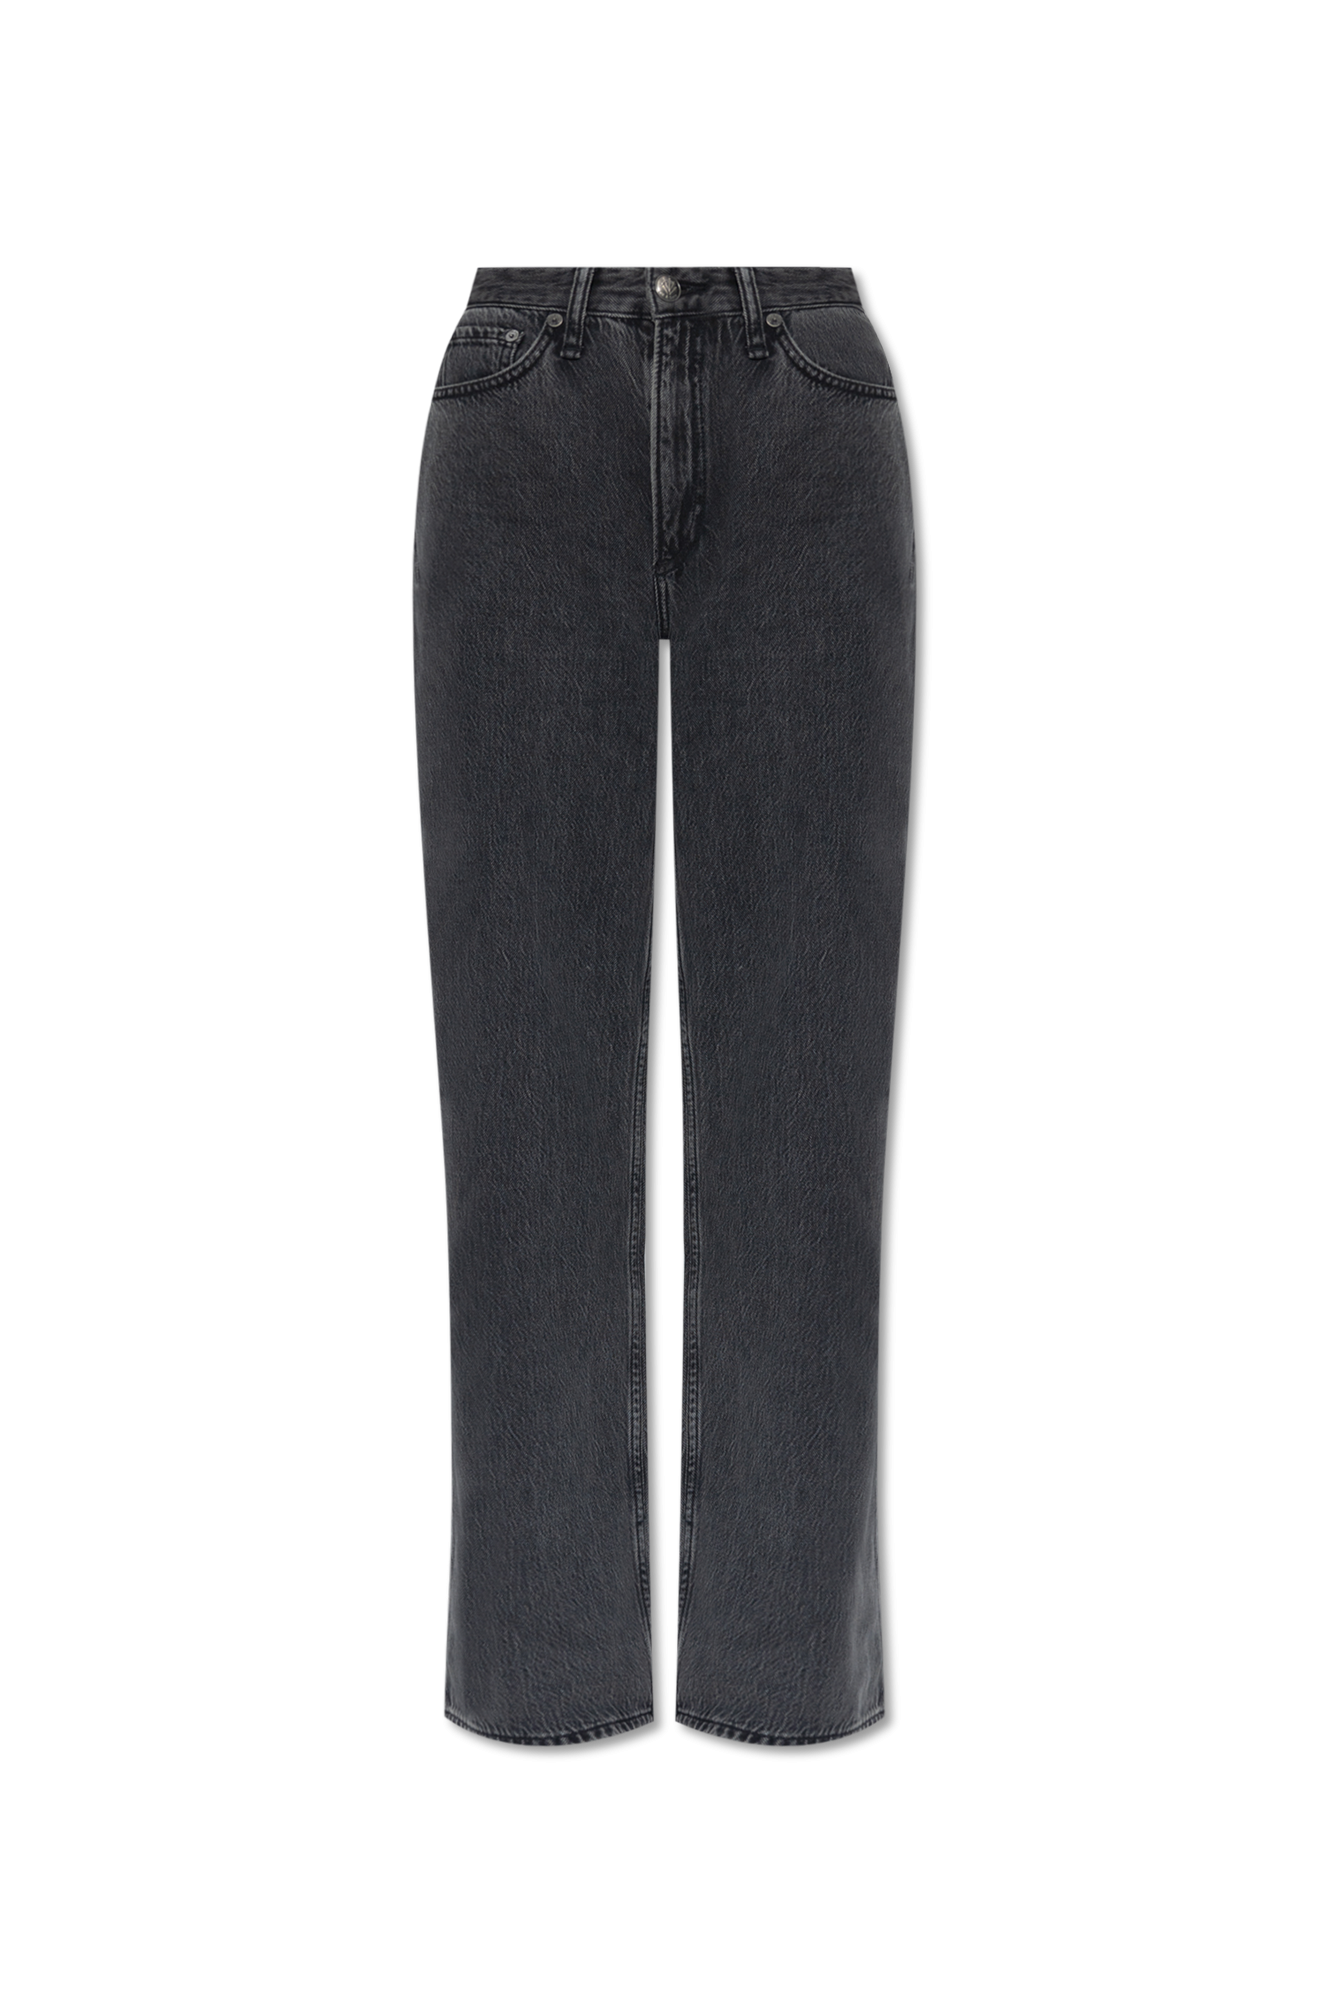 Rose Grain de Malice Jeans courts - Black 'Logan' wide leg jeans